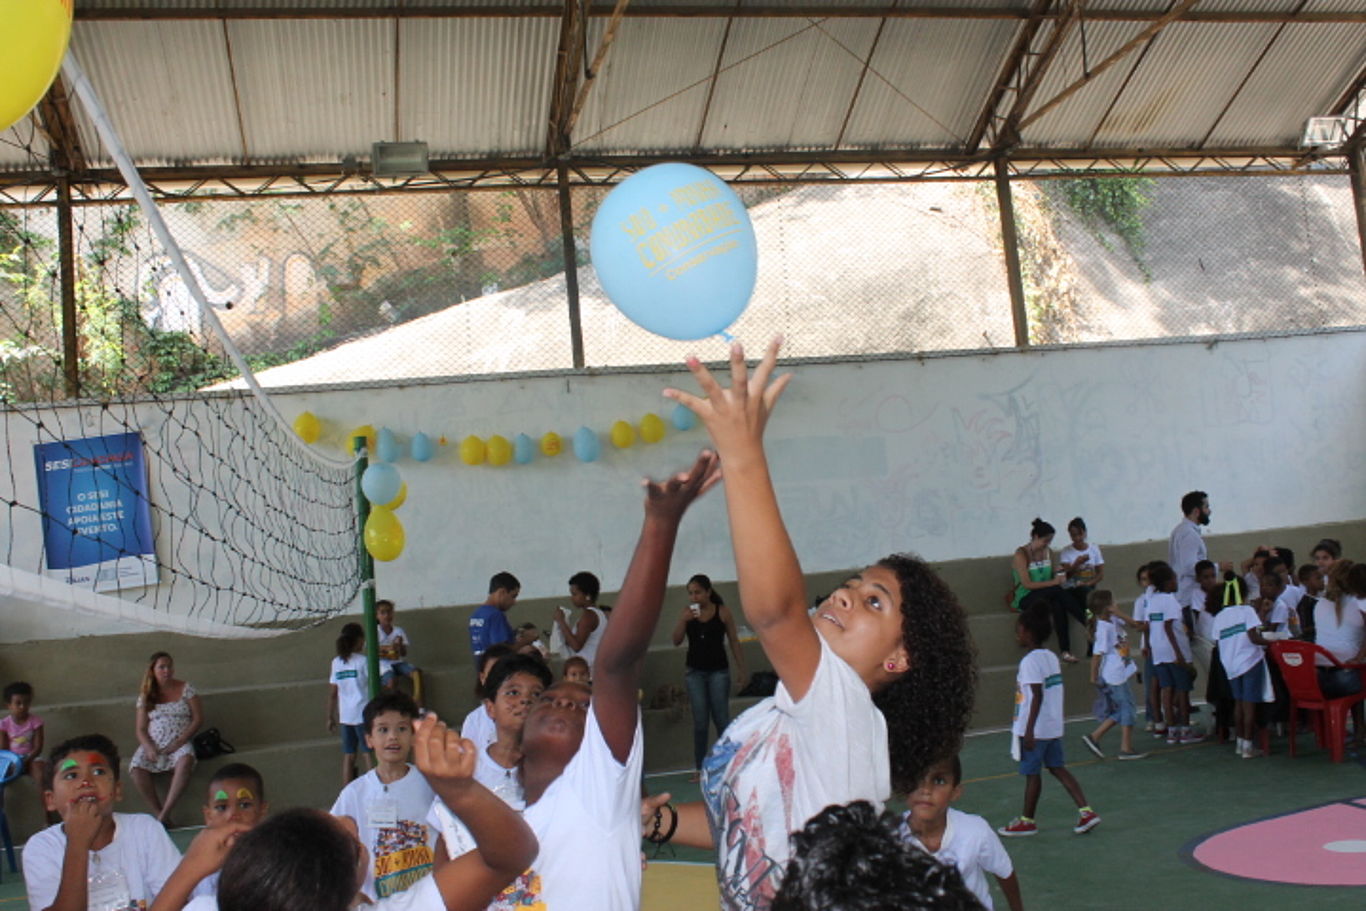 Viele Kinder spielen an einem Volleyballnetz mit einem Luftballon.